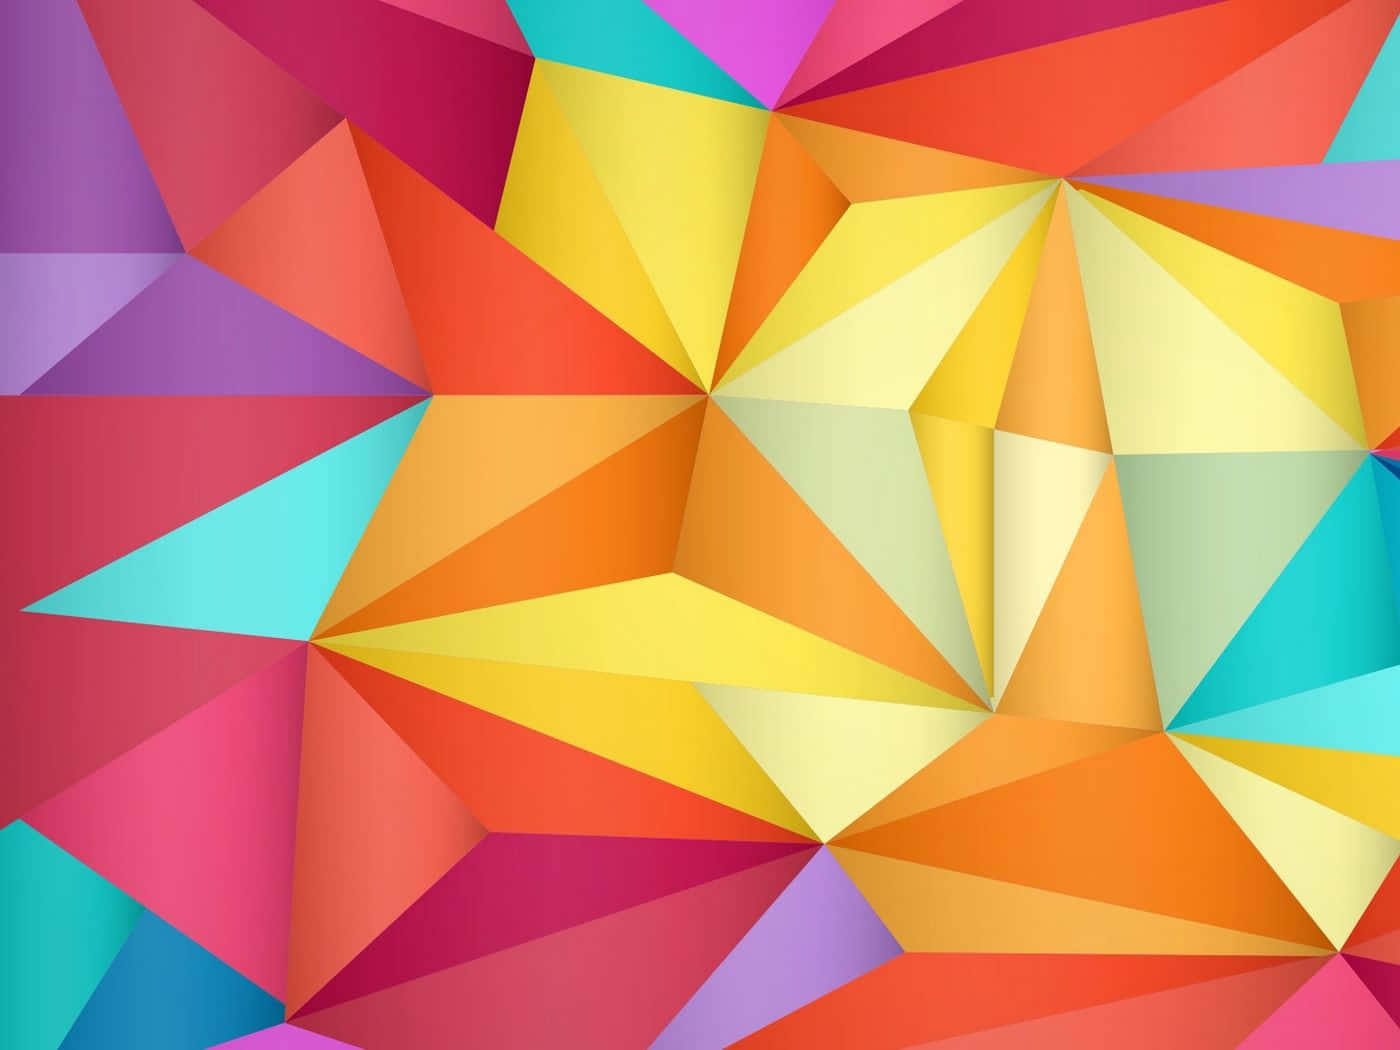 Unmotivo Dinamico A Forma Di Triangolo Con Una Vivace Combinazione Di Colori